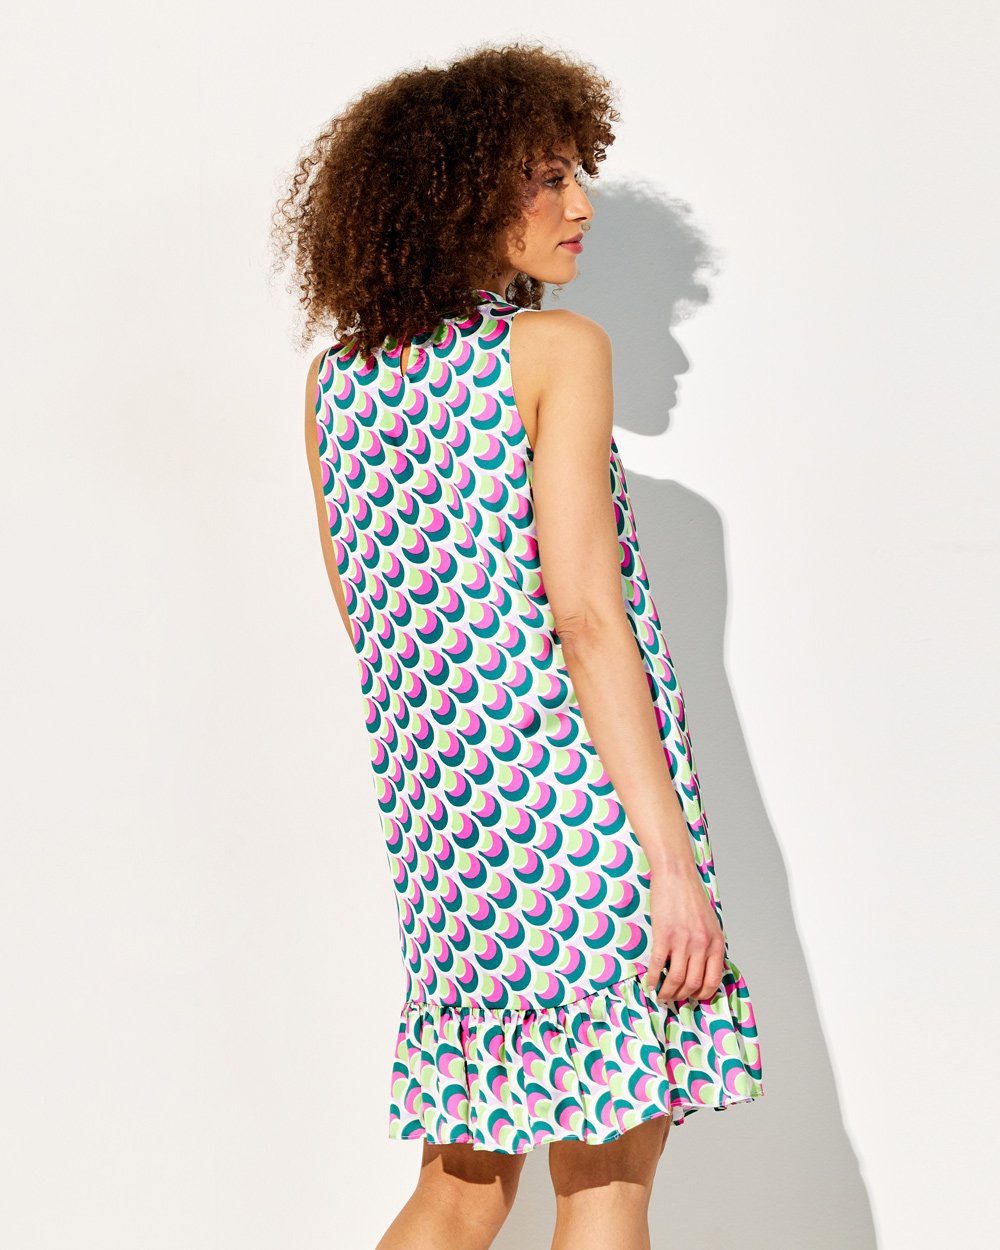 Φόρεμα σε γεωμετρικό print με βολάν στο τελείωμα